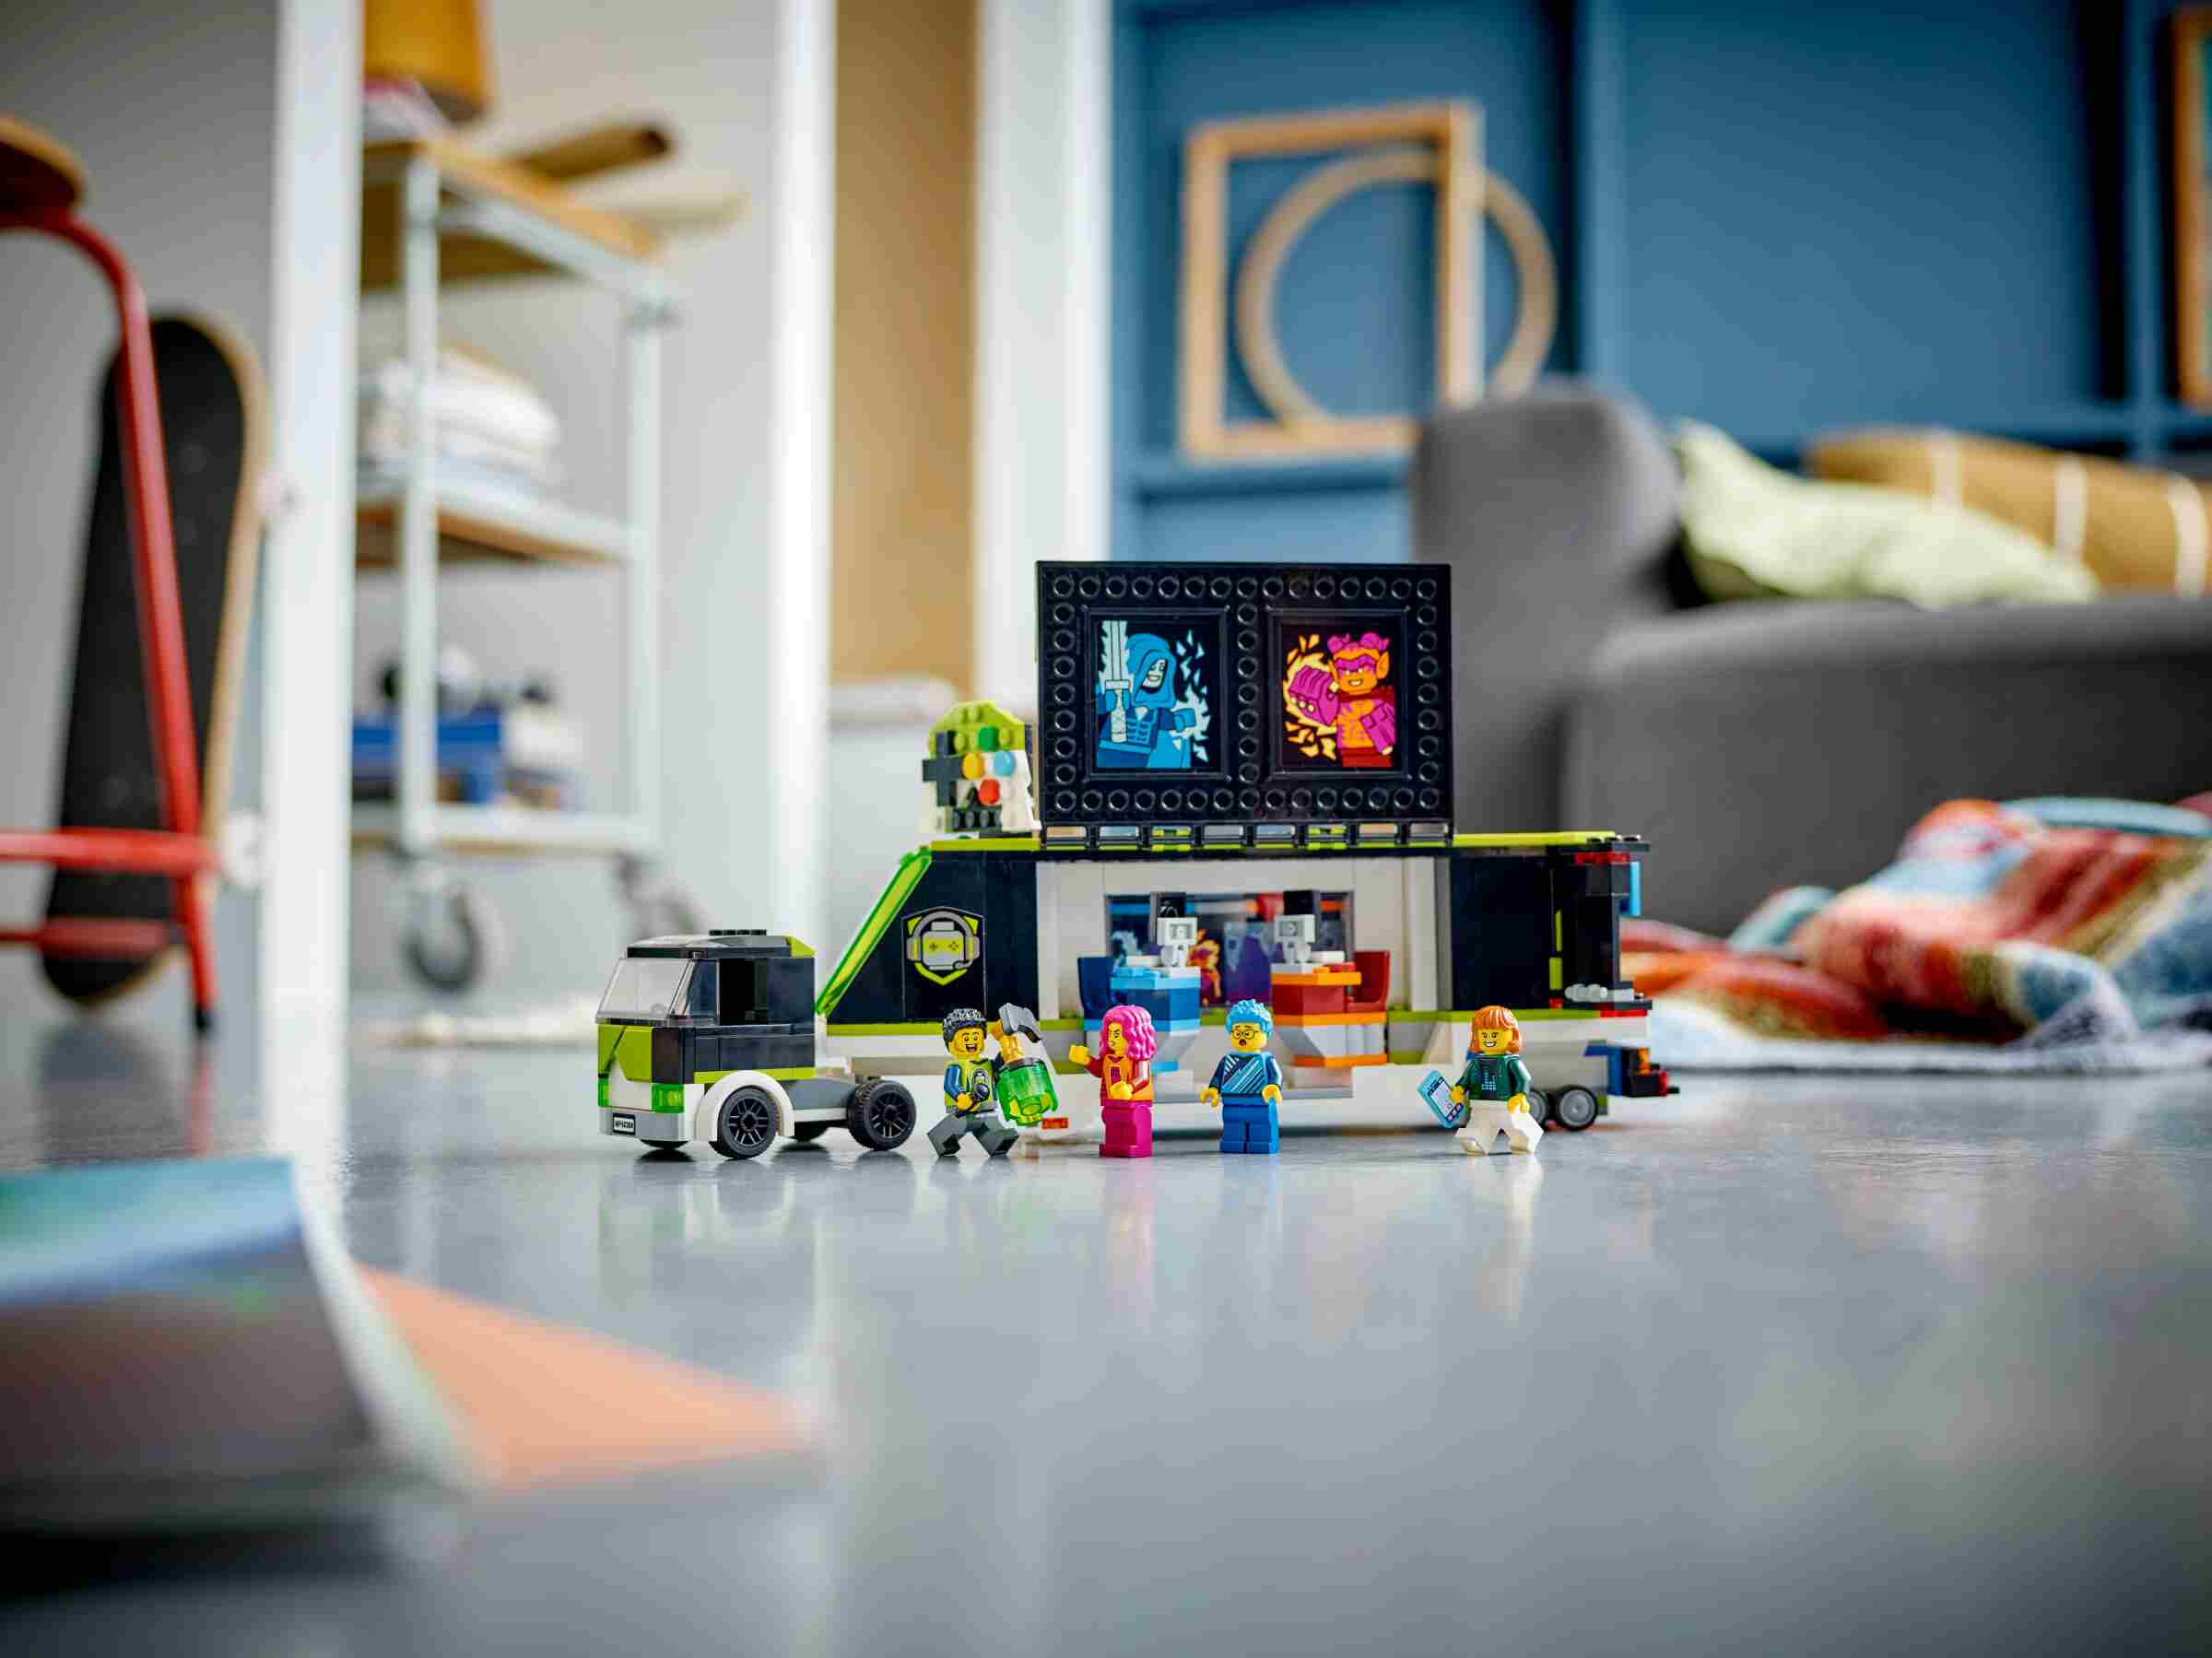 LEGO 60388 City Gaming Turnier Truck, eSports, 3 Minifiguren, "Starke Fahrzeuge"